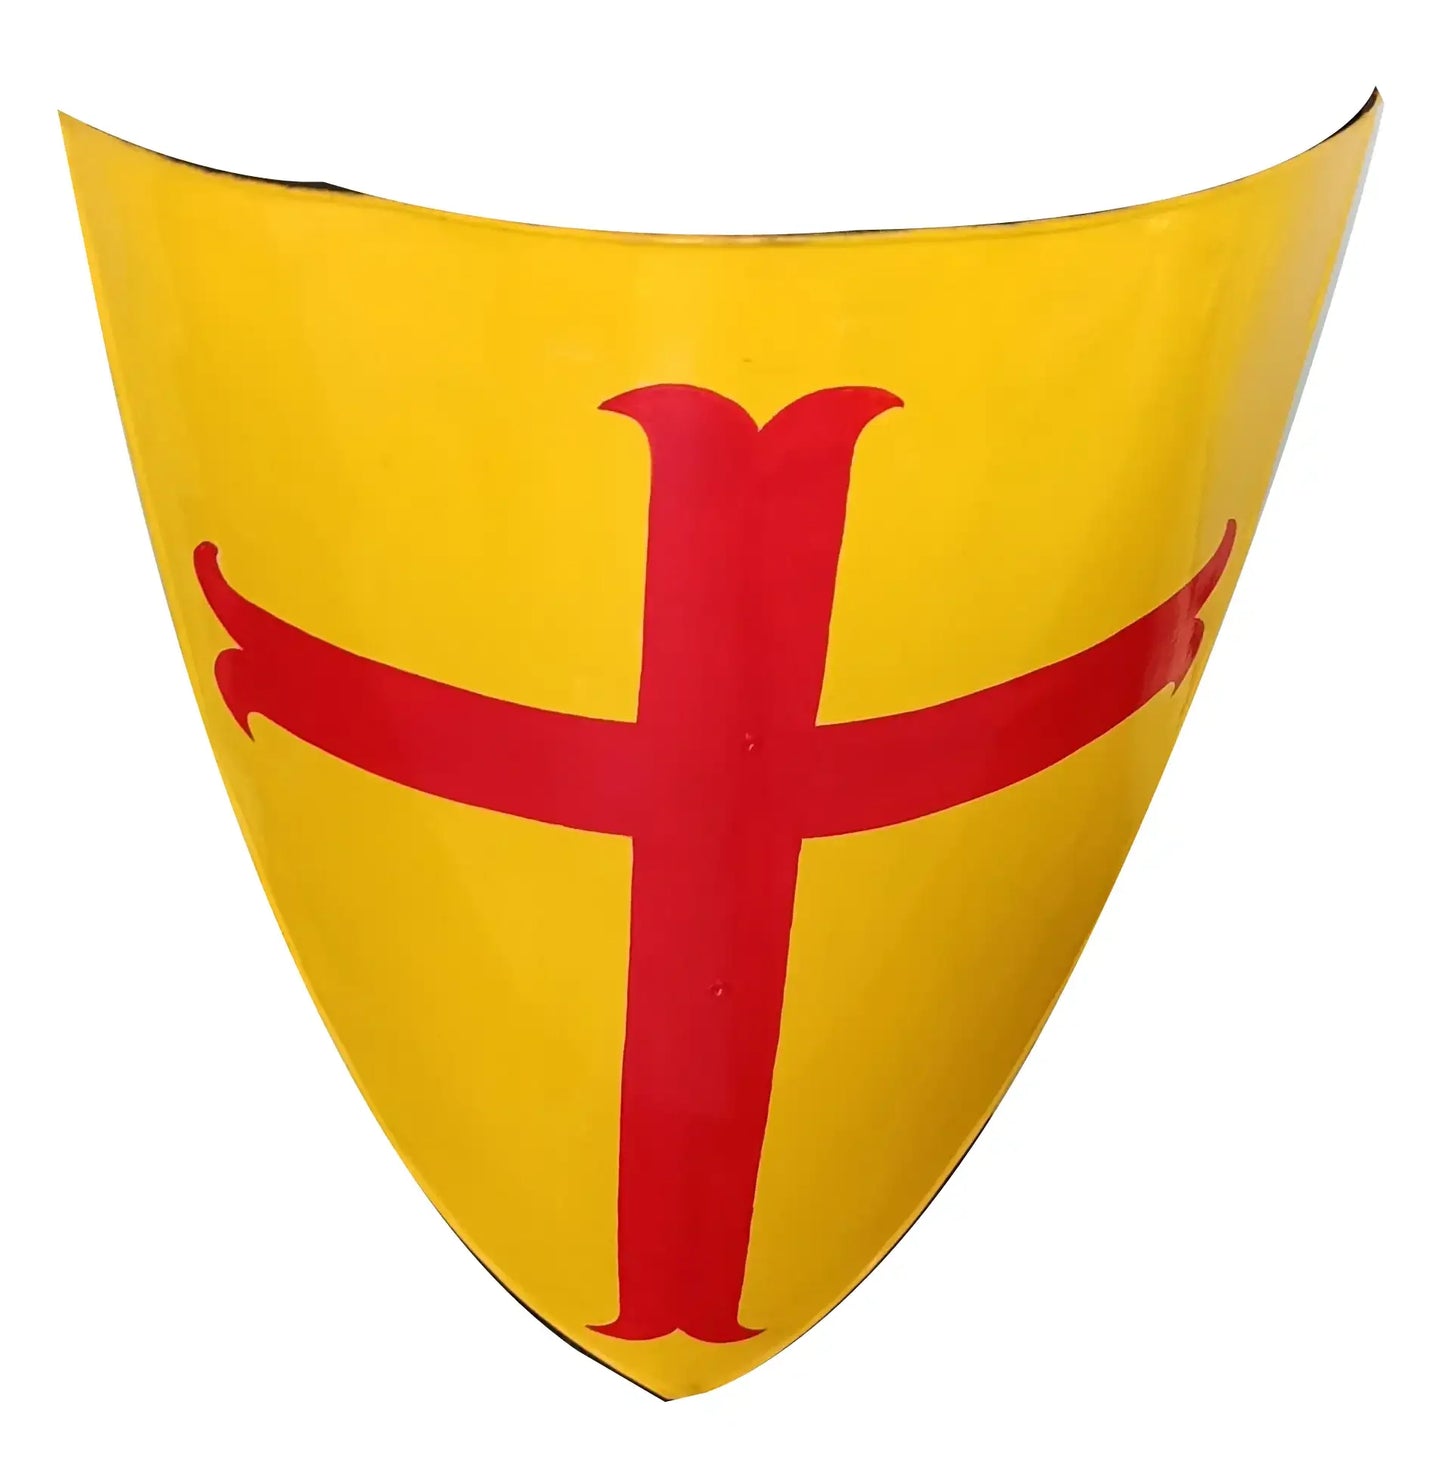 Escudo de caballero templario amarillo cruzado de la Cruz Roja medieval 